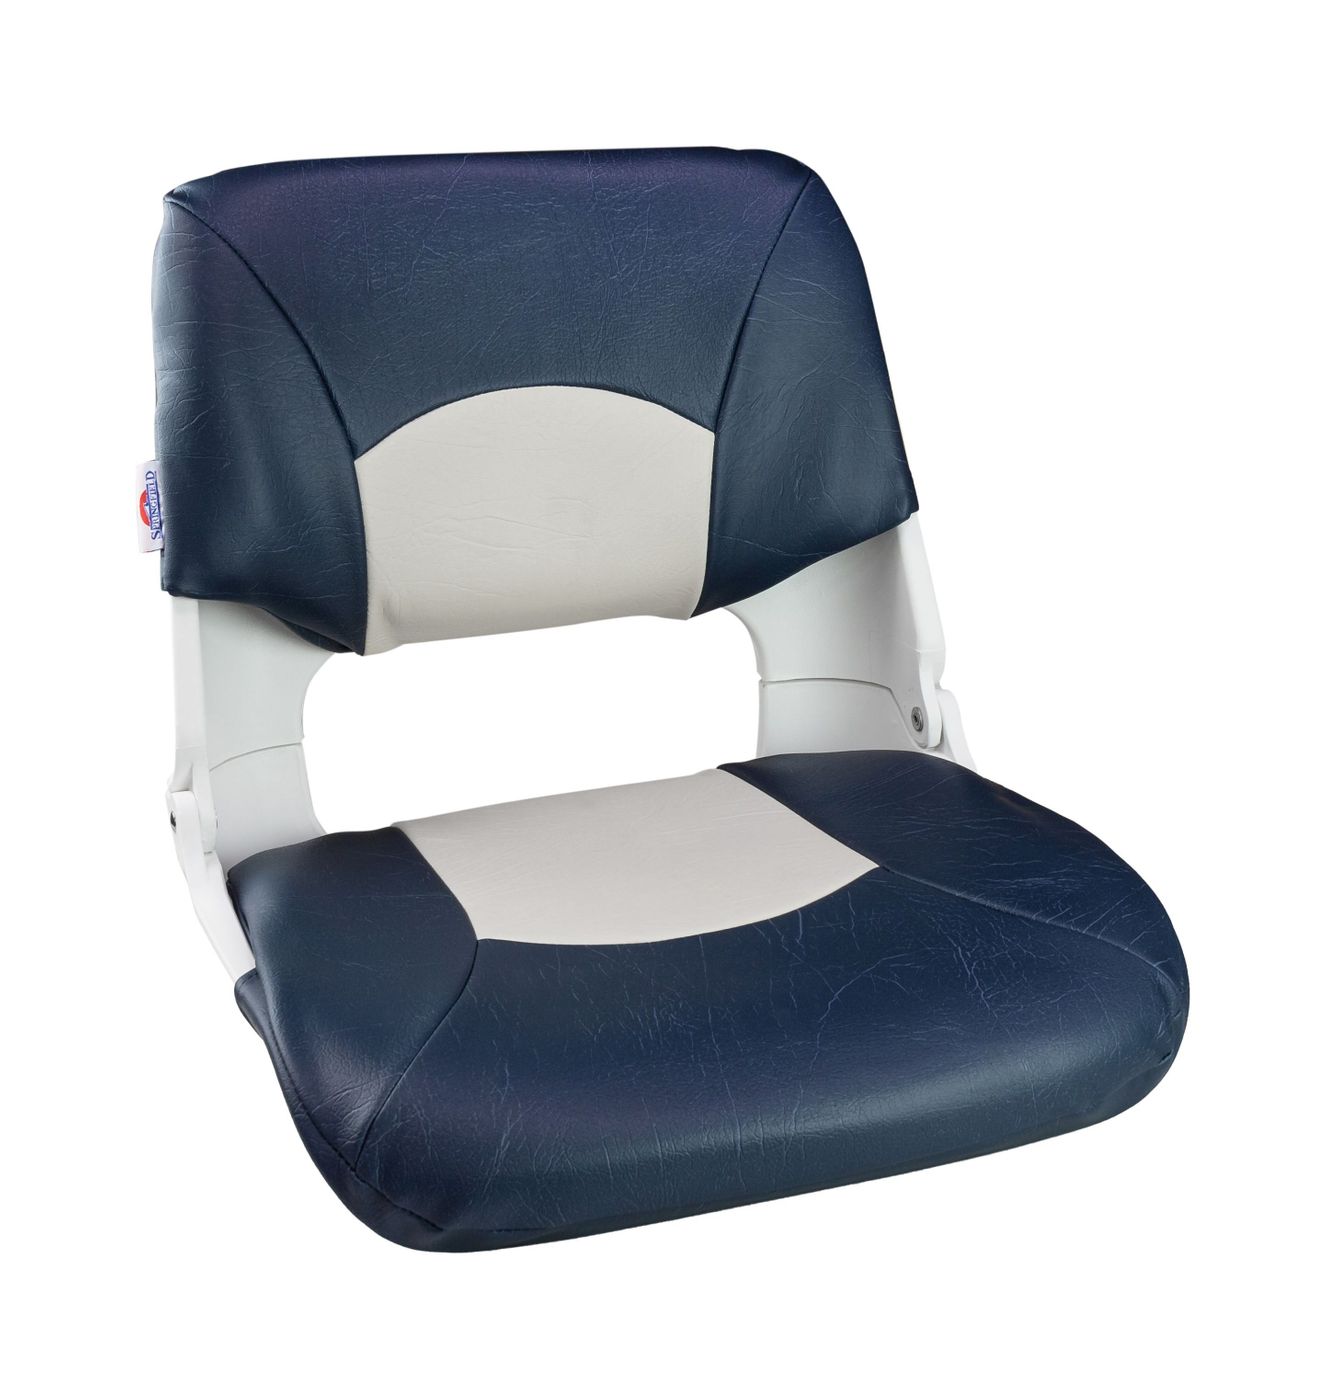 Кресло складное мягкое SKIPPER, цвет синий/белый 1061016 кресло мягкое sportman синий белый 1001416 112